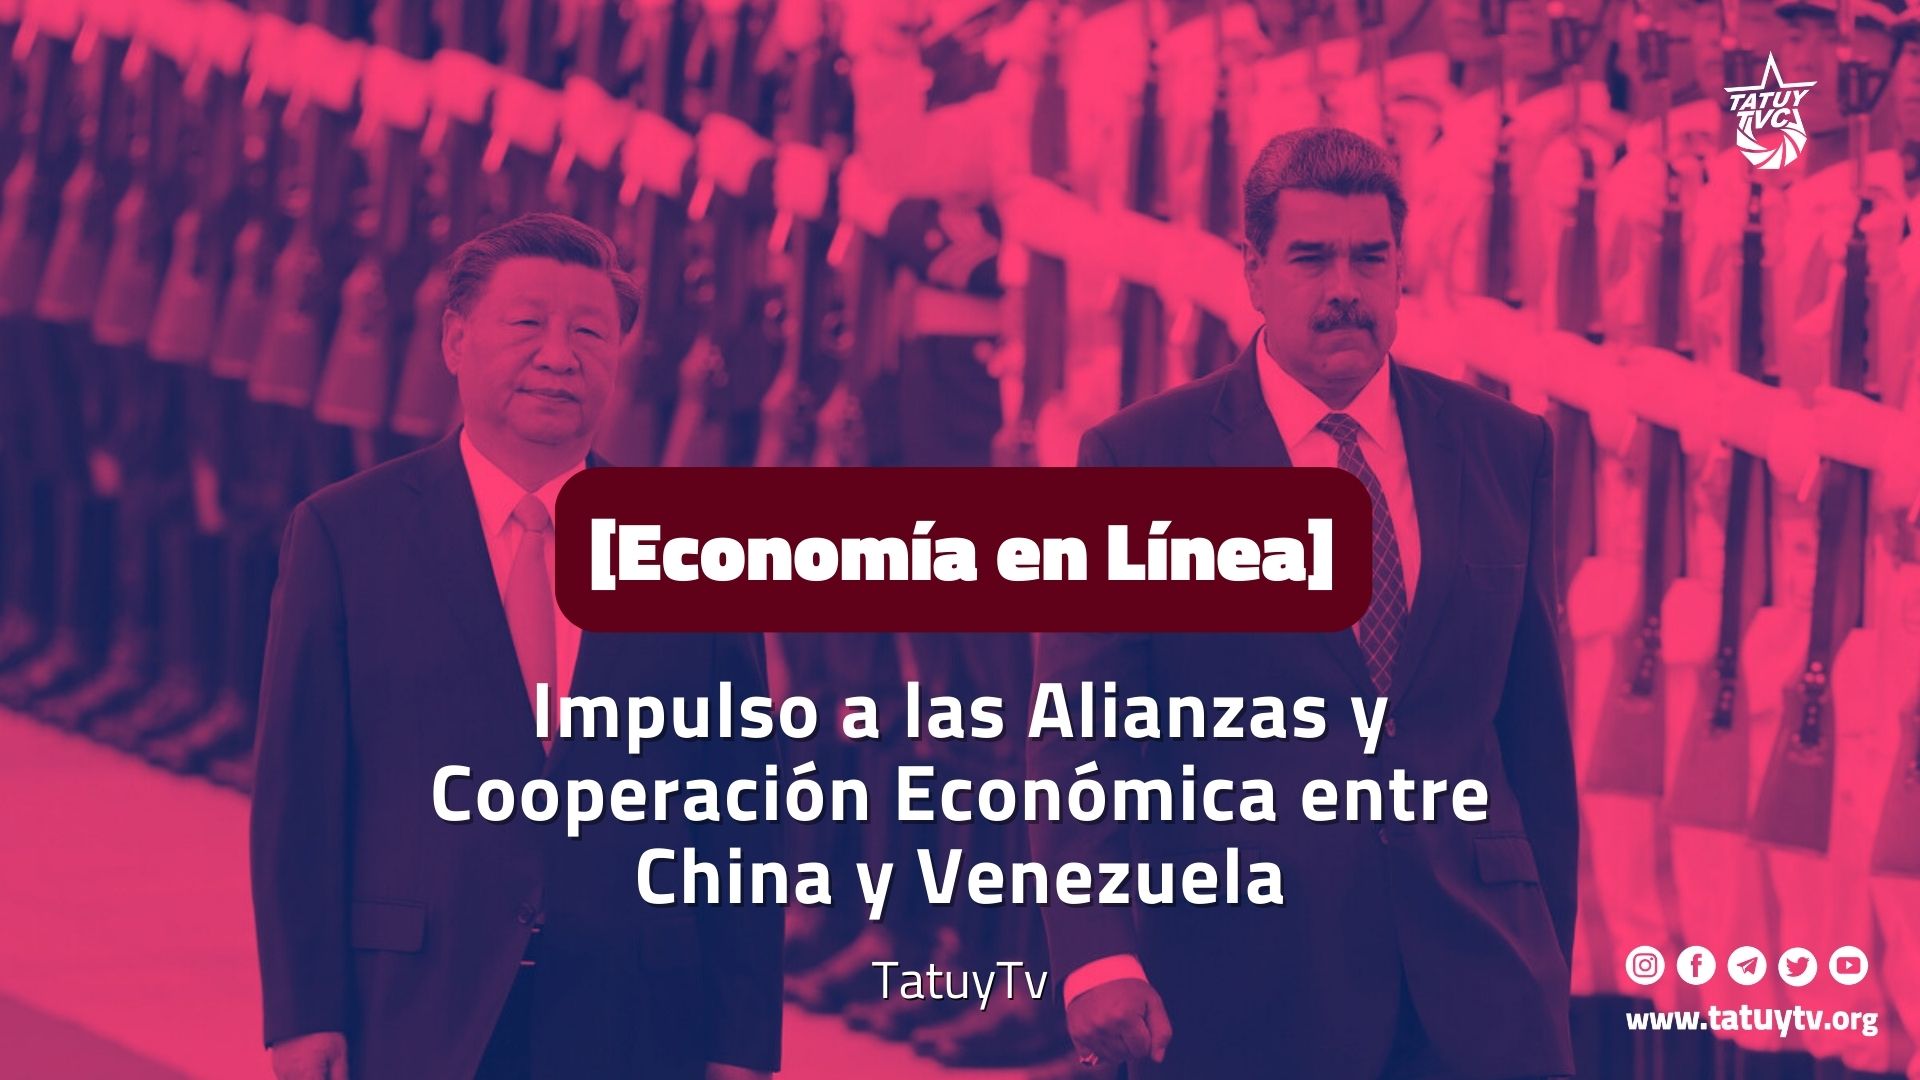 [Economía en Línea] Visita de Estado de Nicolás Maduro a China. Impulso a las Alianzas y Cooperación Económica entre ambos países